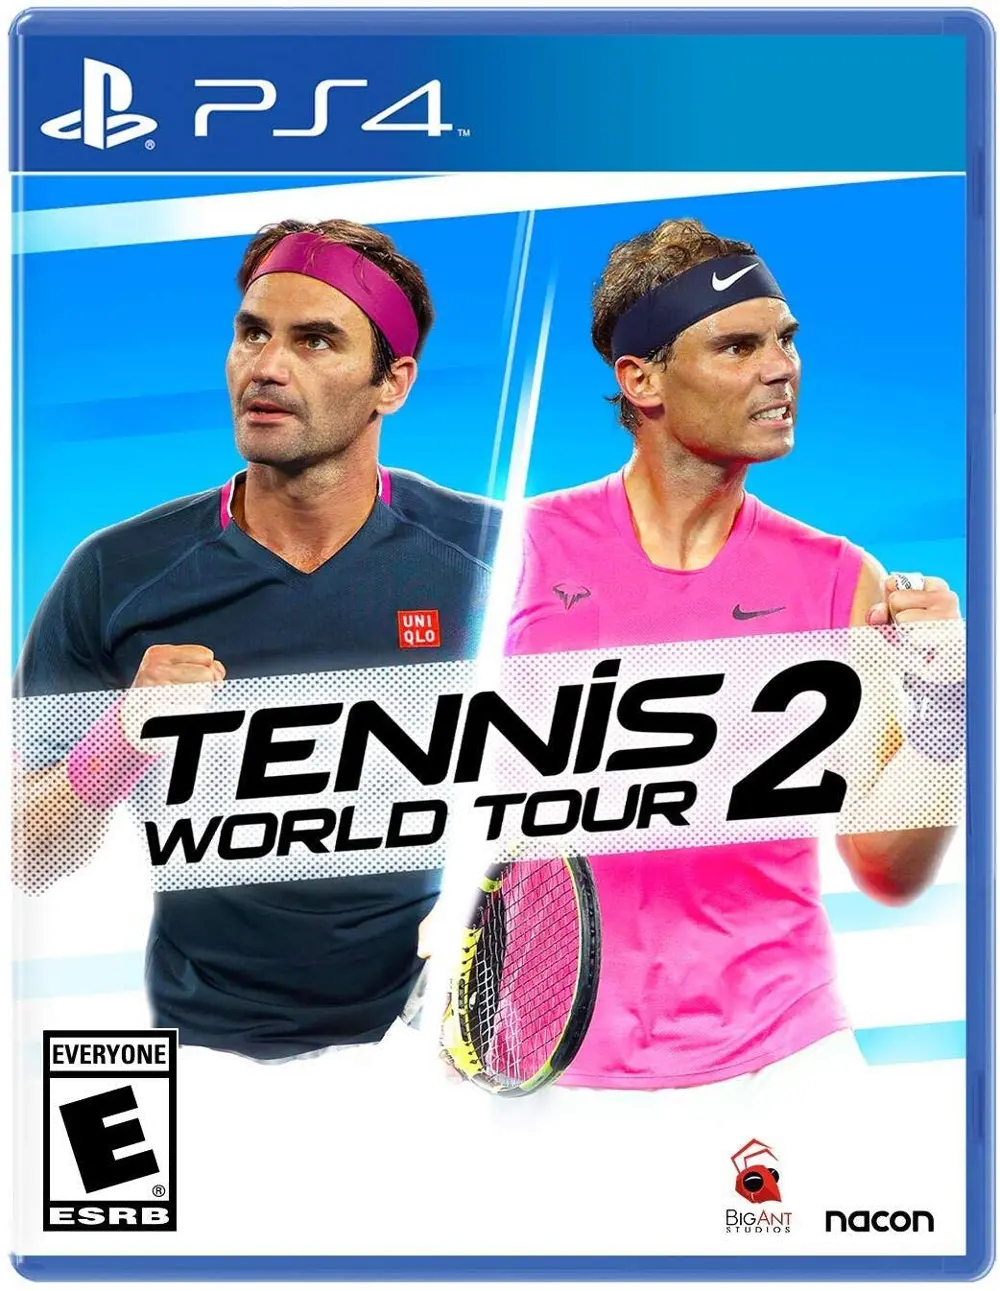 PS4/TENNIS_WORLD_TR2 Tennis World Tour 2 - PS4-1